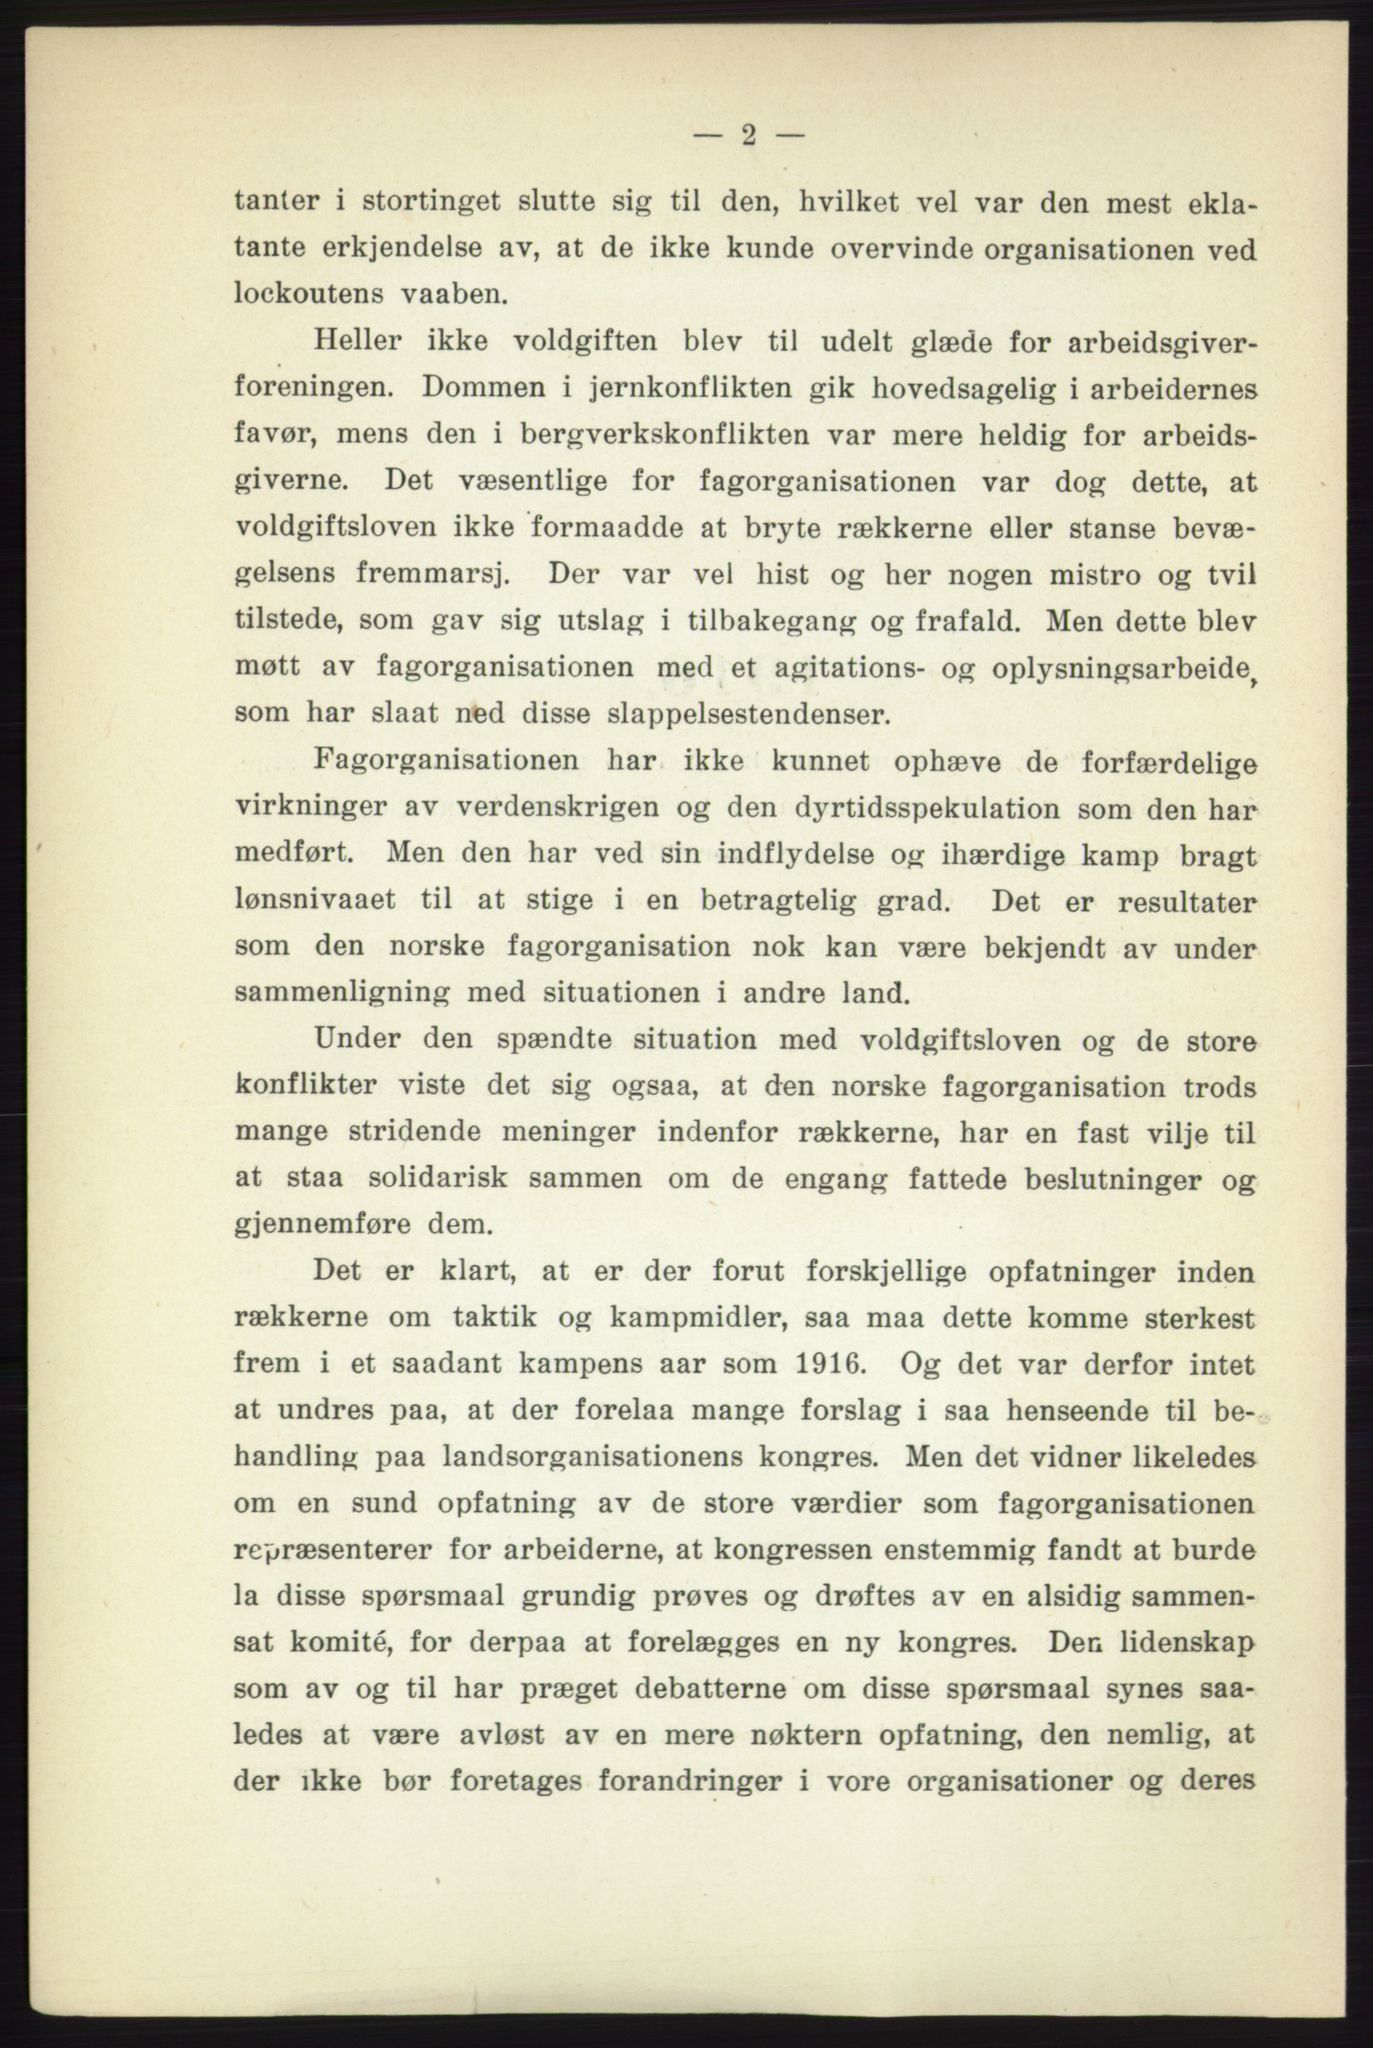 Landsorganisasjonen i Norge - publikasjoner, AAB/-/-/-: Landsorganisationens beretning for 1916, 1916, p. 2